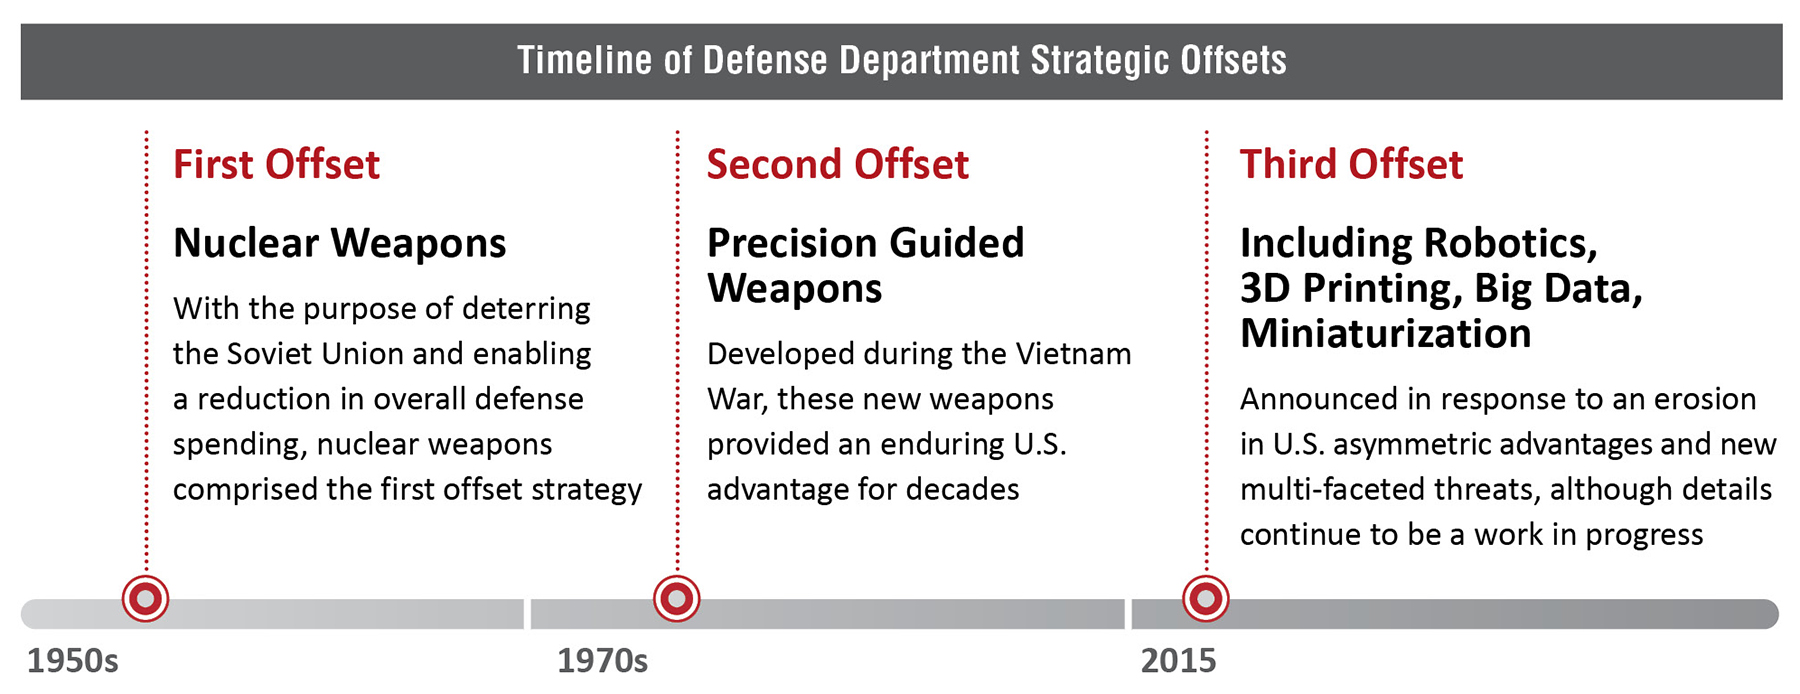 Timeline of Defense Department Strategic Offsets